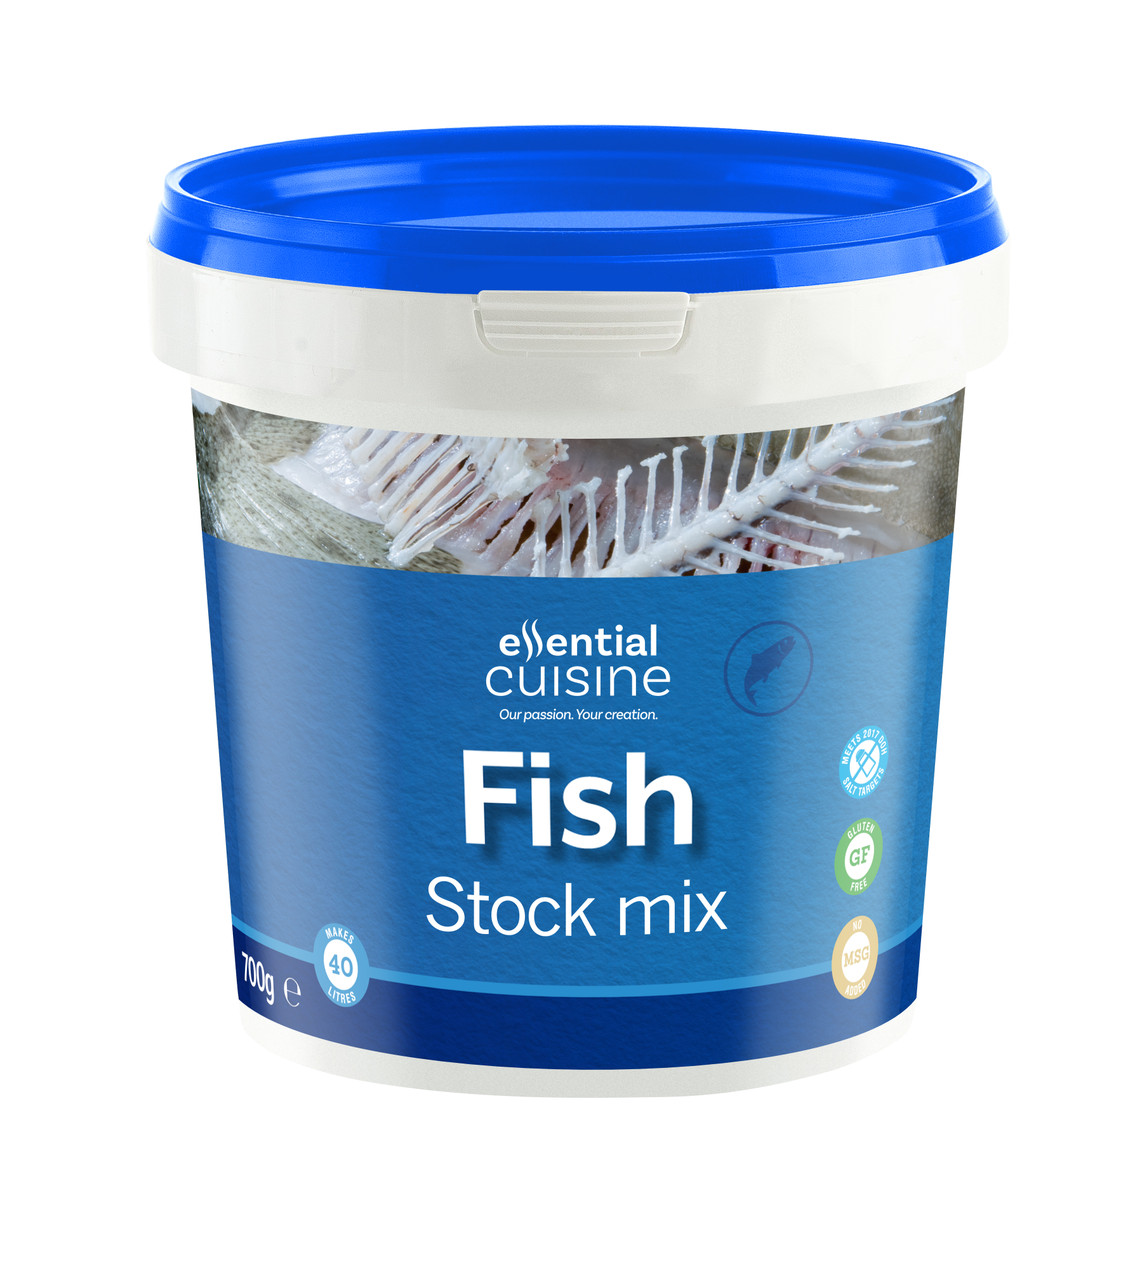 ESSENTIAL CUISINE FISH STOCK MIX 700g